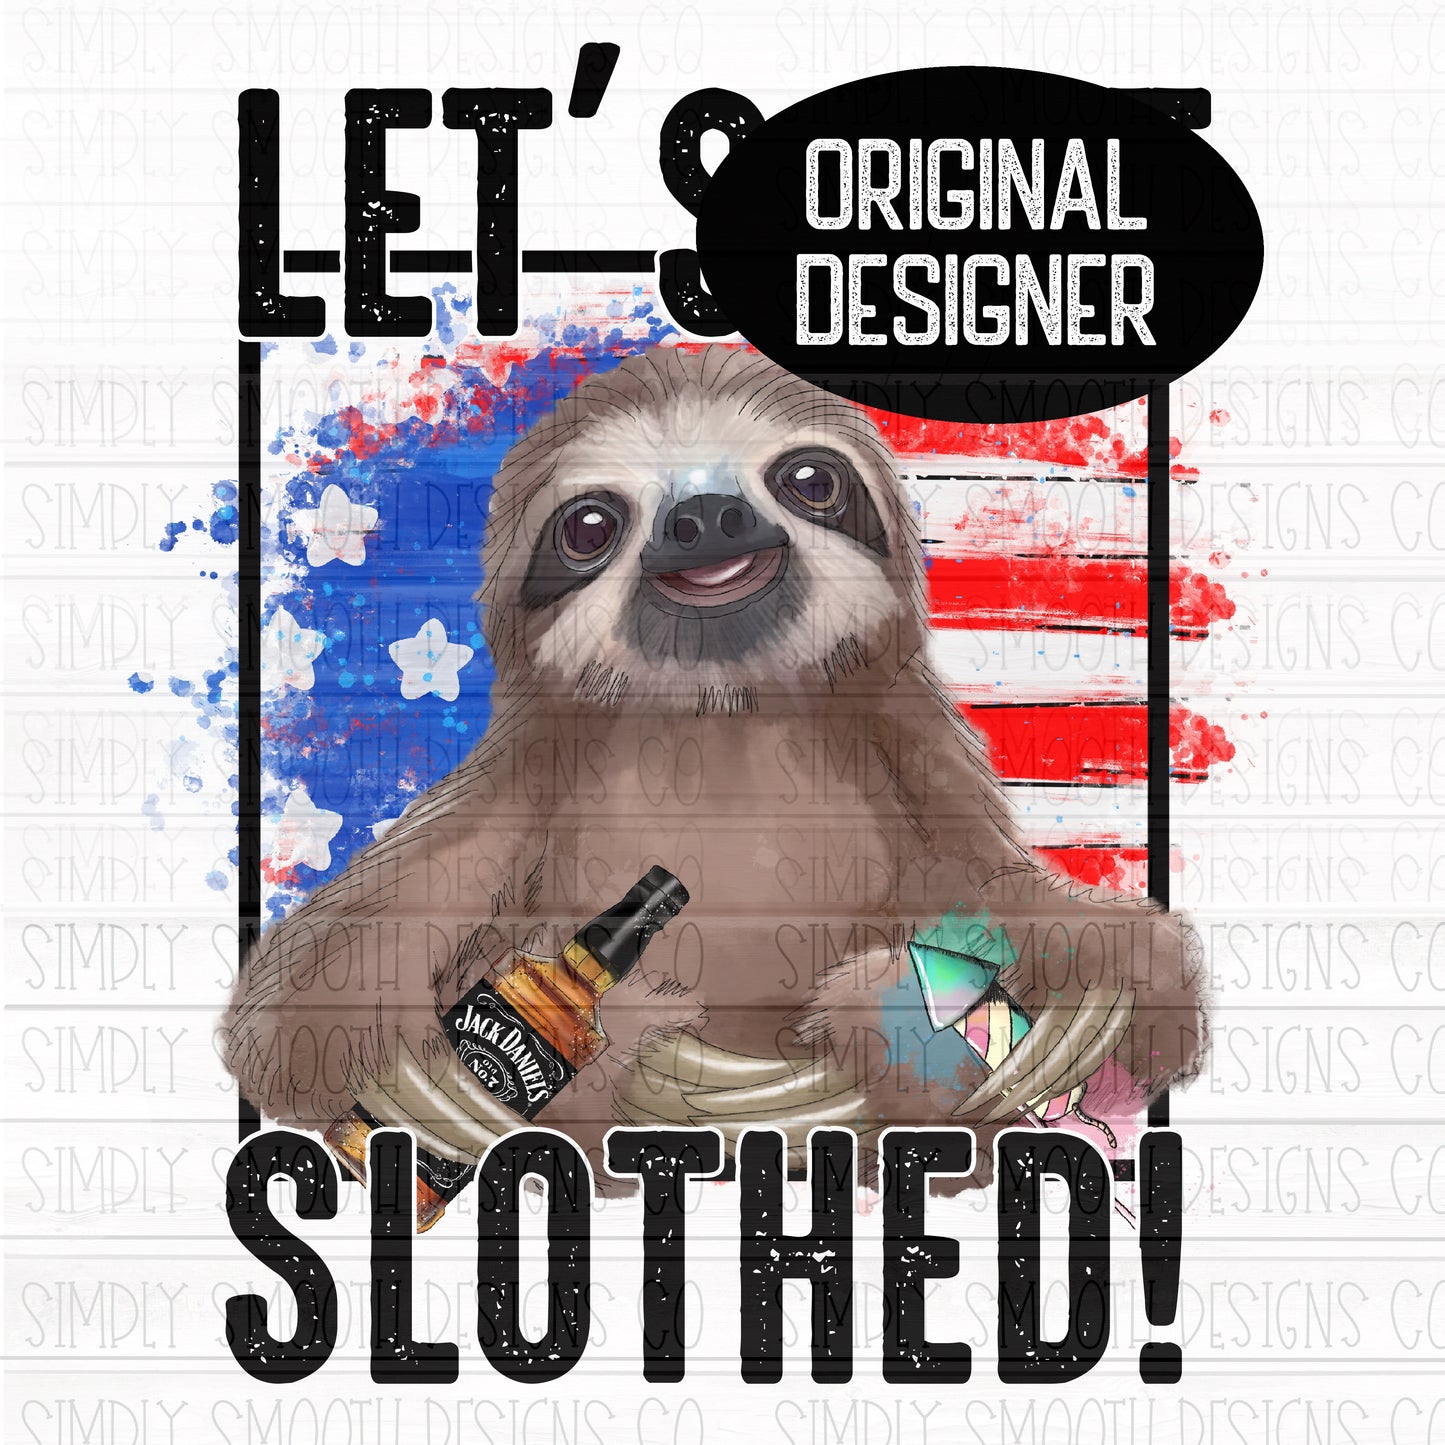 Let’s get slothed